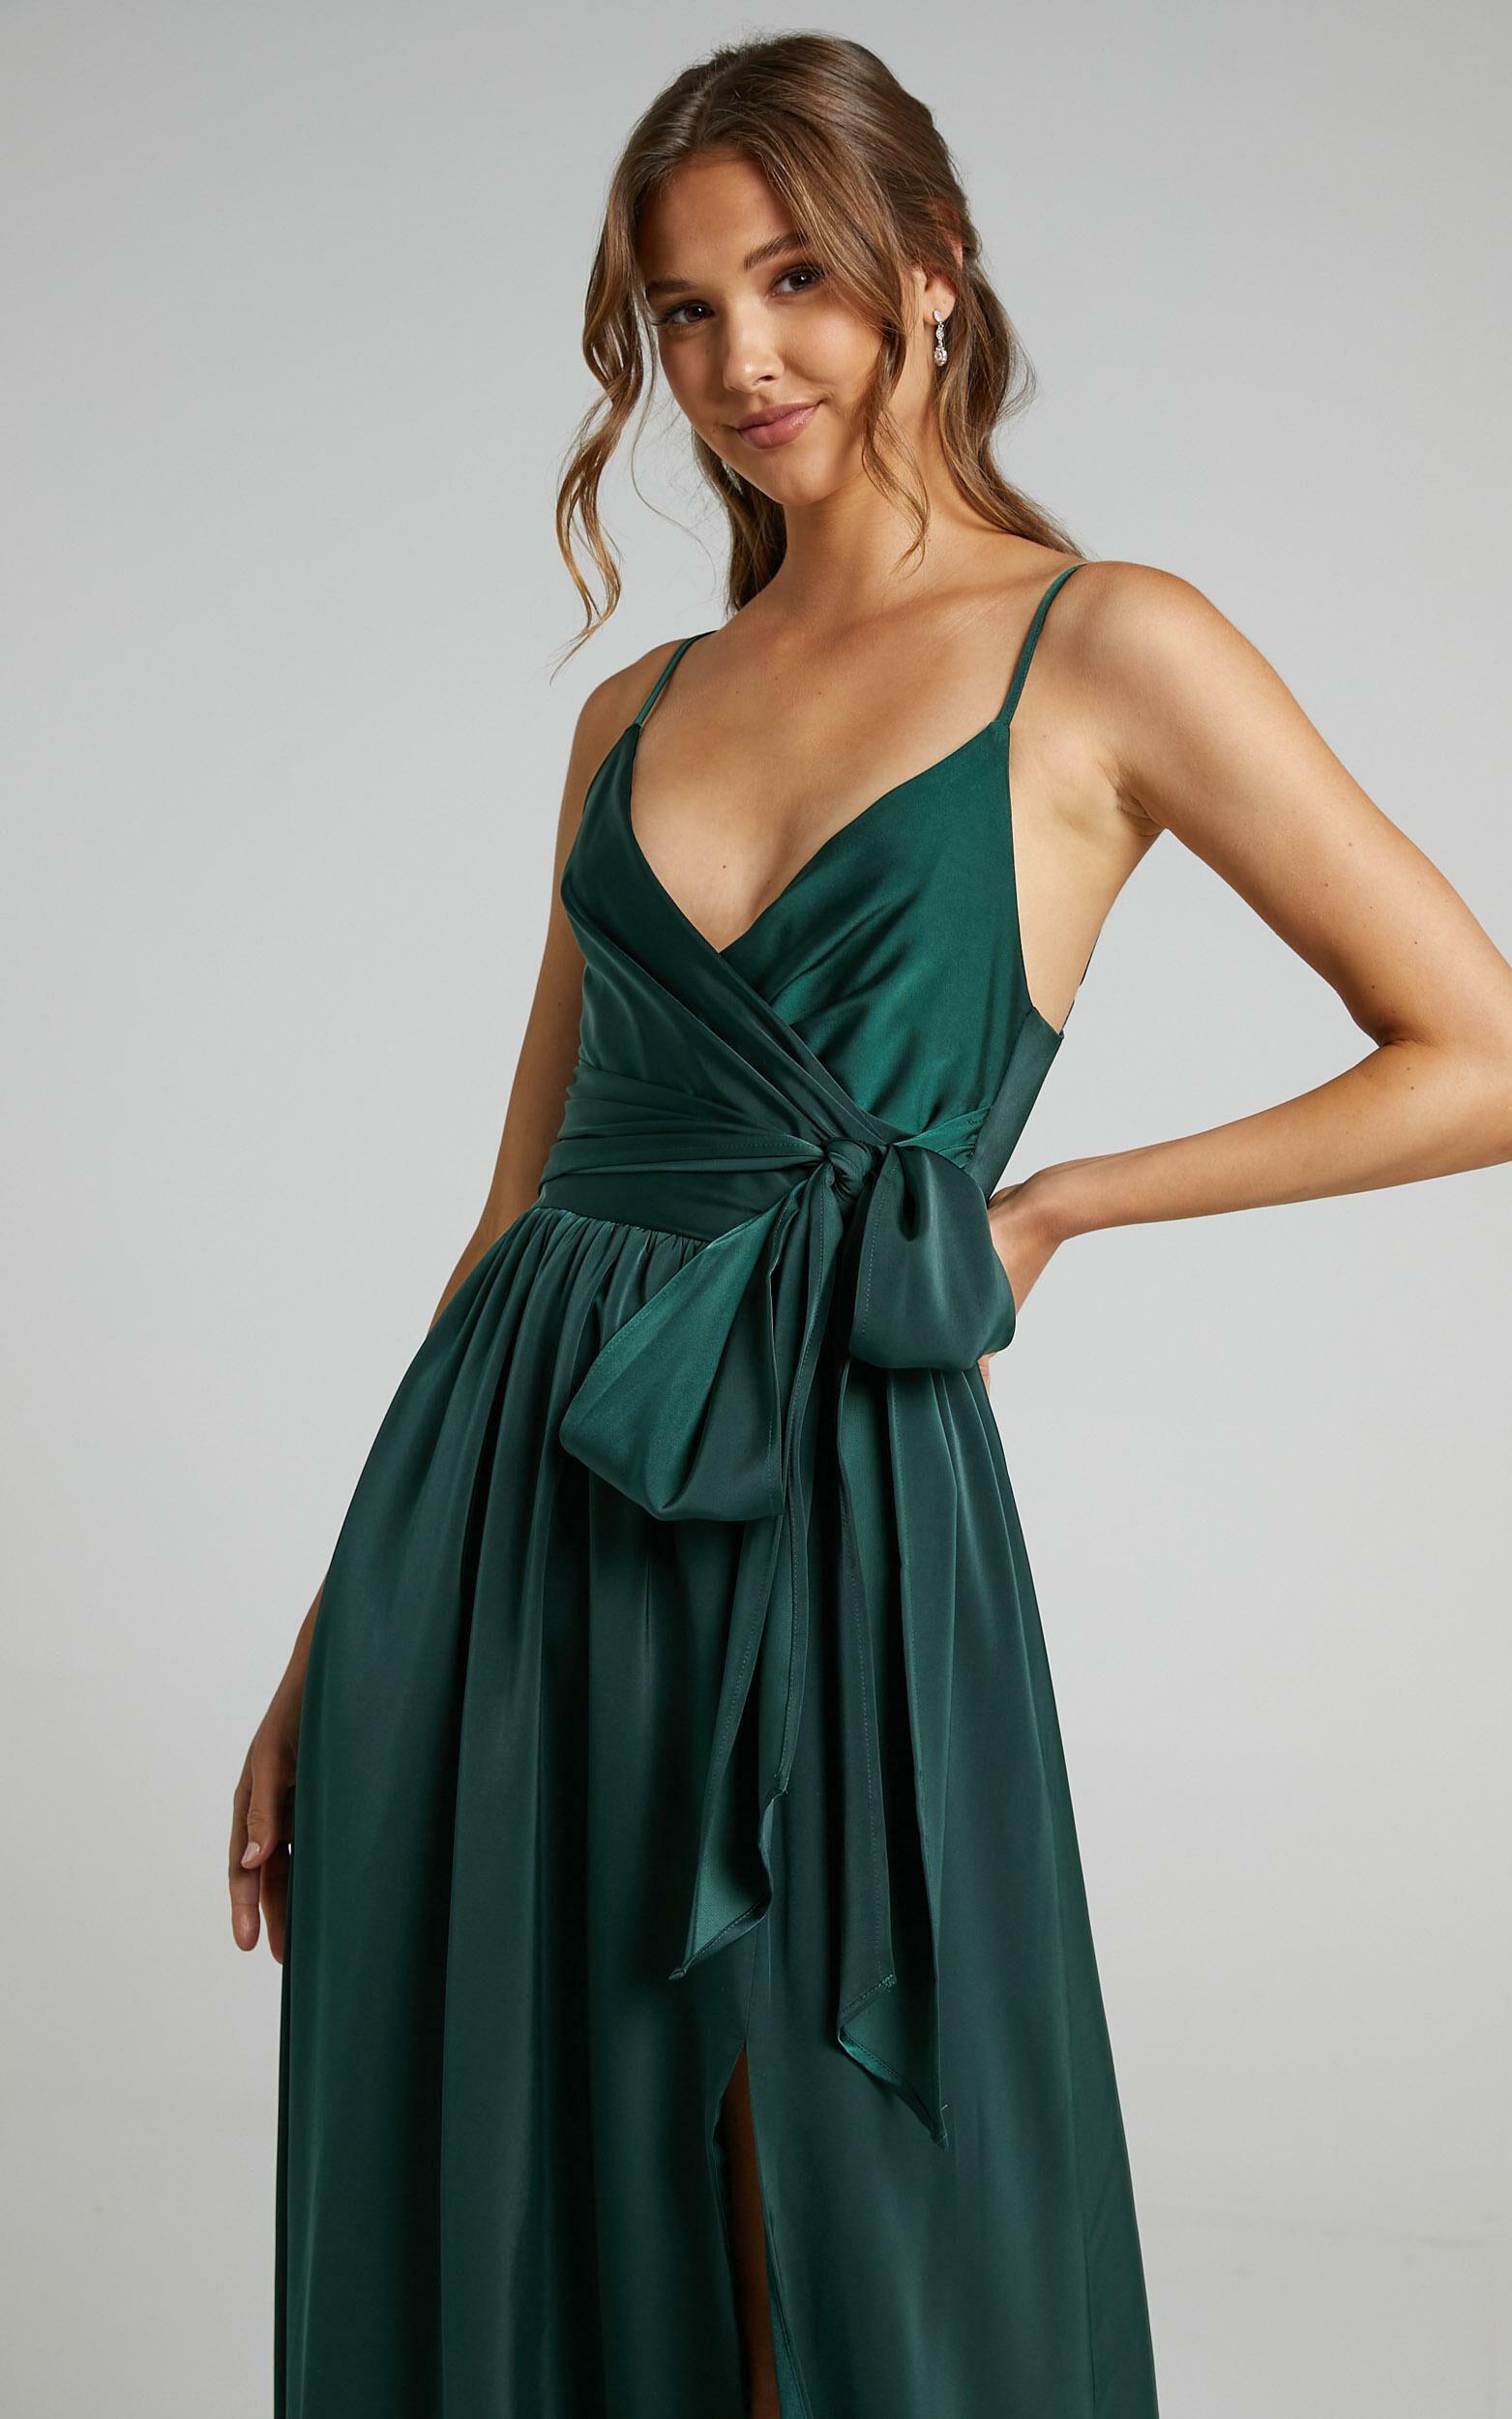 Revolve Around Me Midi Dress - V Neck Wrap Dress in Emerald - 12, GRN1